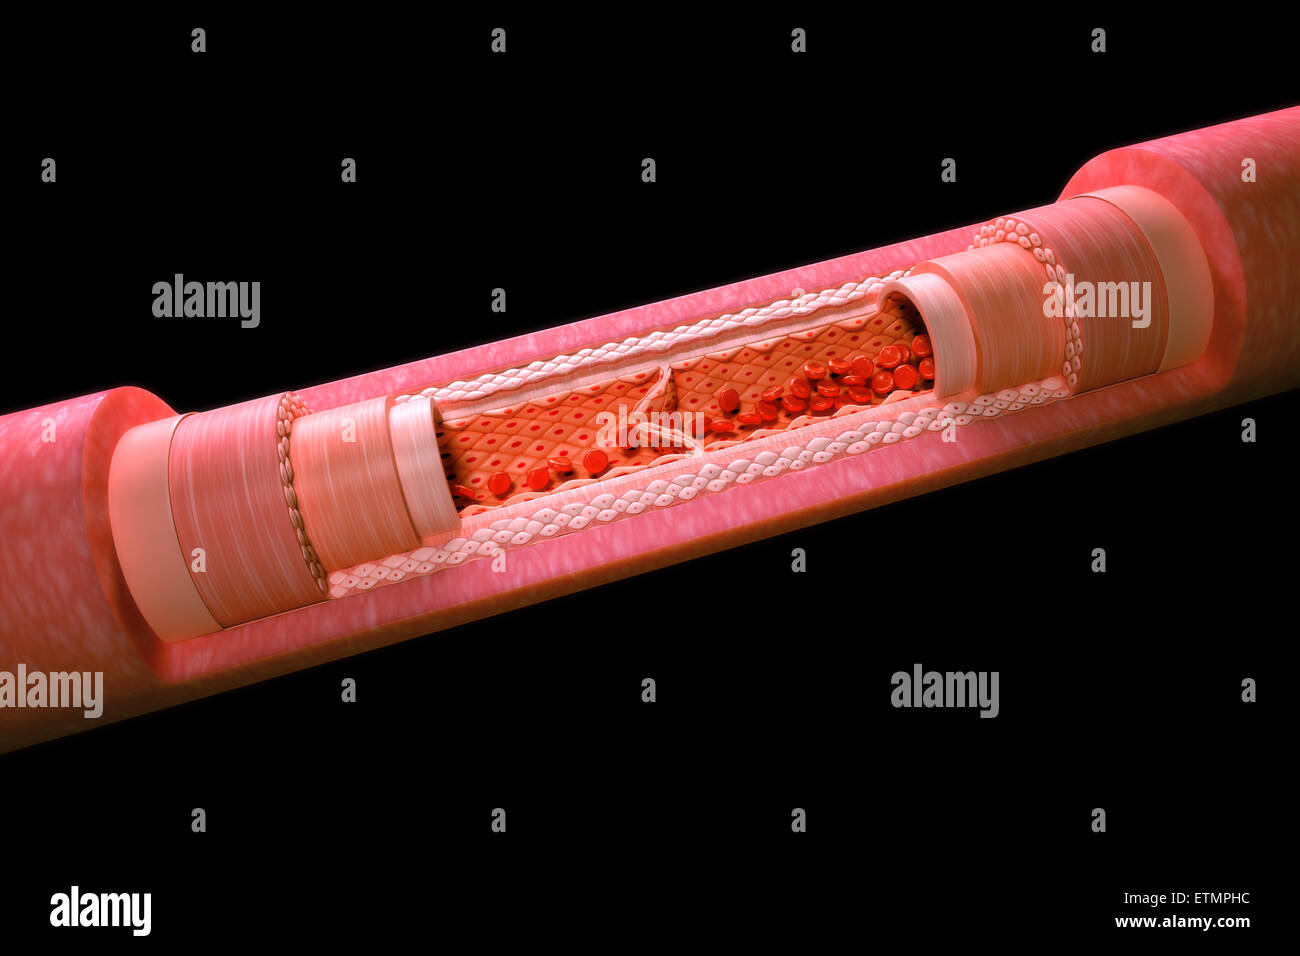 Illustrazione che mostra una vena con una sezione ritagliata per rivelare l'anatomia interna, comprese le valvole e il flusso di sangue. Foto Stock